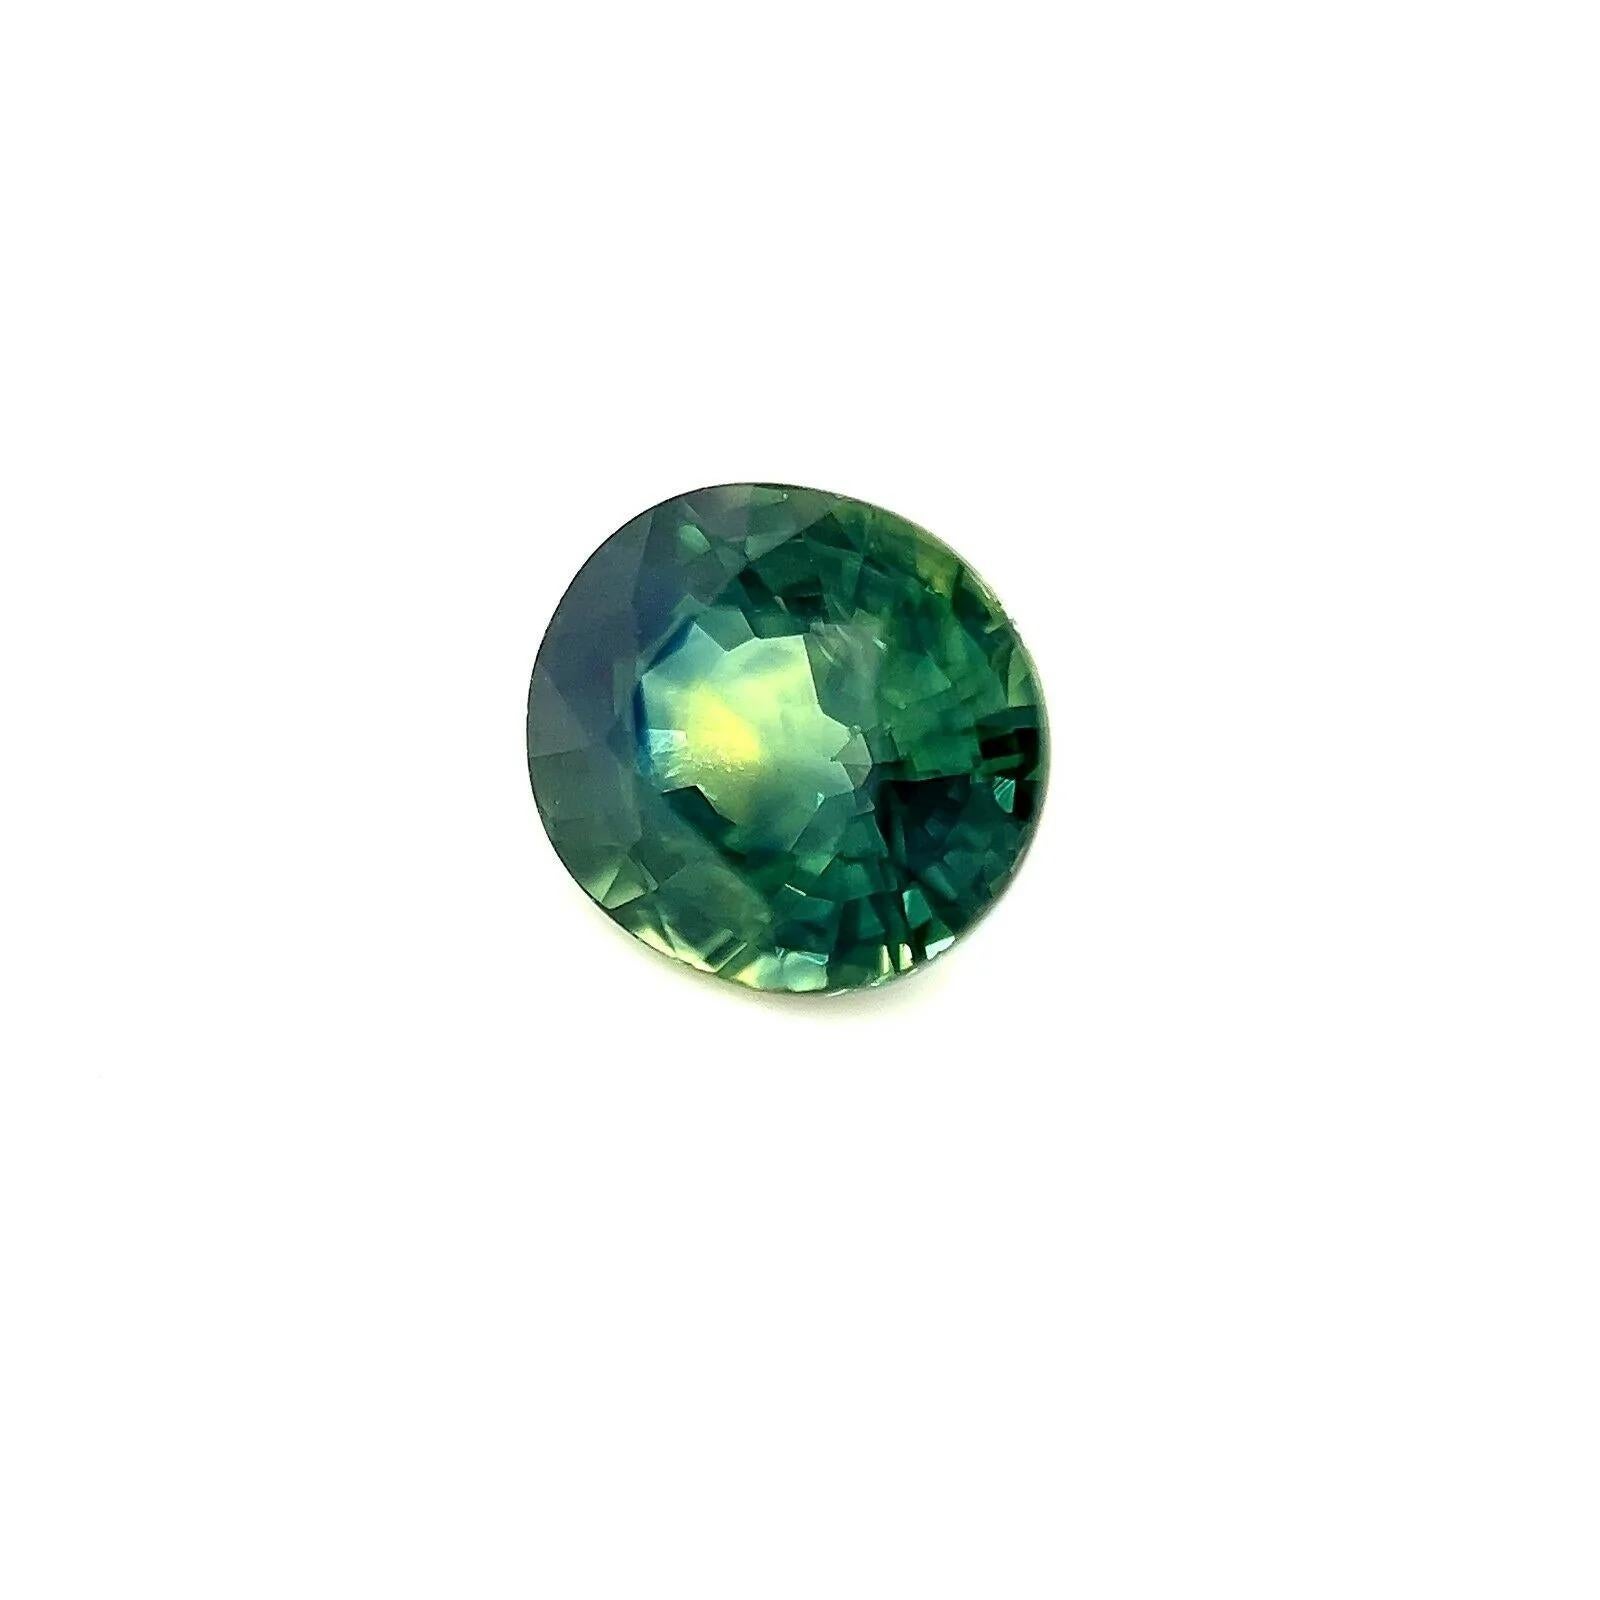 1.36ct Blau Grün Teal Gelb Australischer Saphir Oval Schliff Seltener Edelstein 6x6.5mm

Natürlicher Grüner Blauer Australischer Saphir Edelstein.
1.36 Karat mit einer wunderschönen und einzigartigen Farbgebung, vorwiegend in einem exquisiten